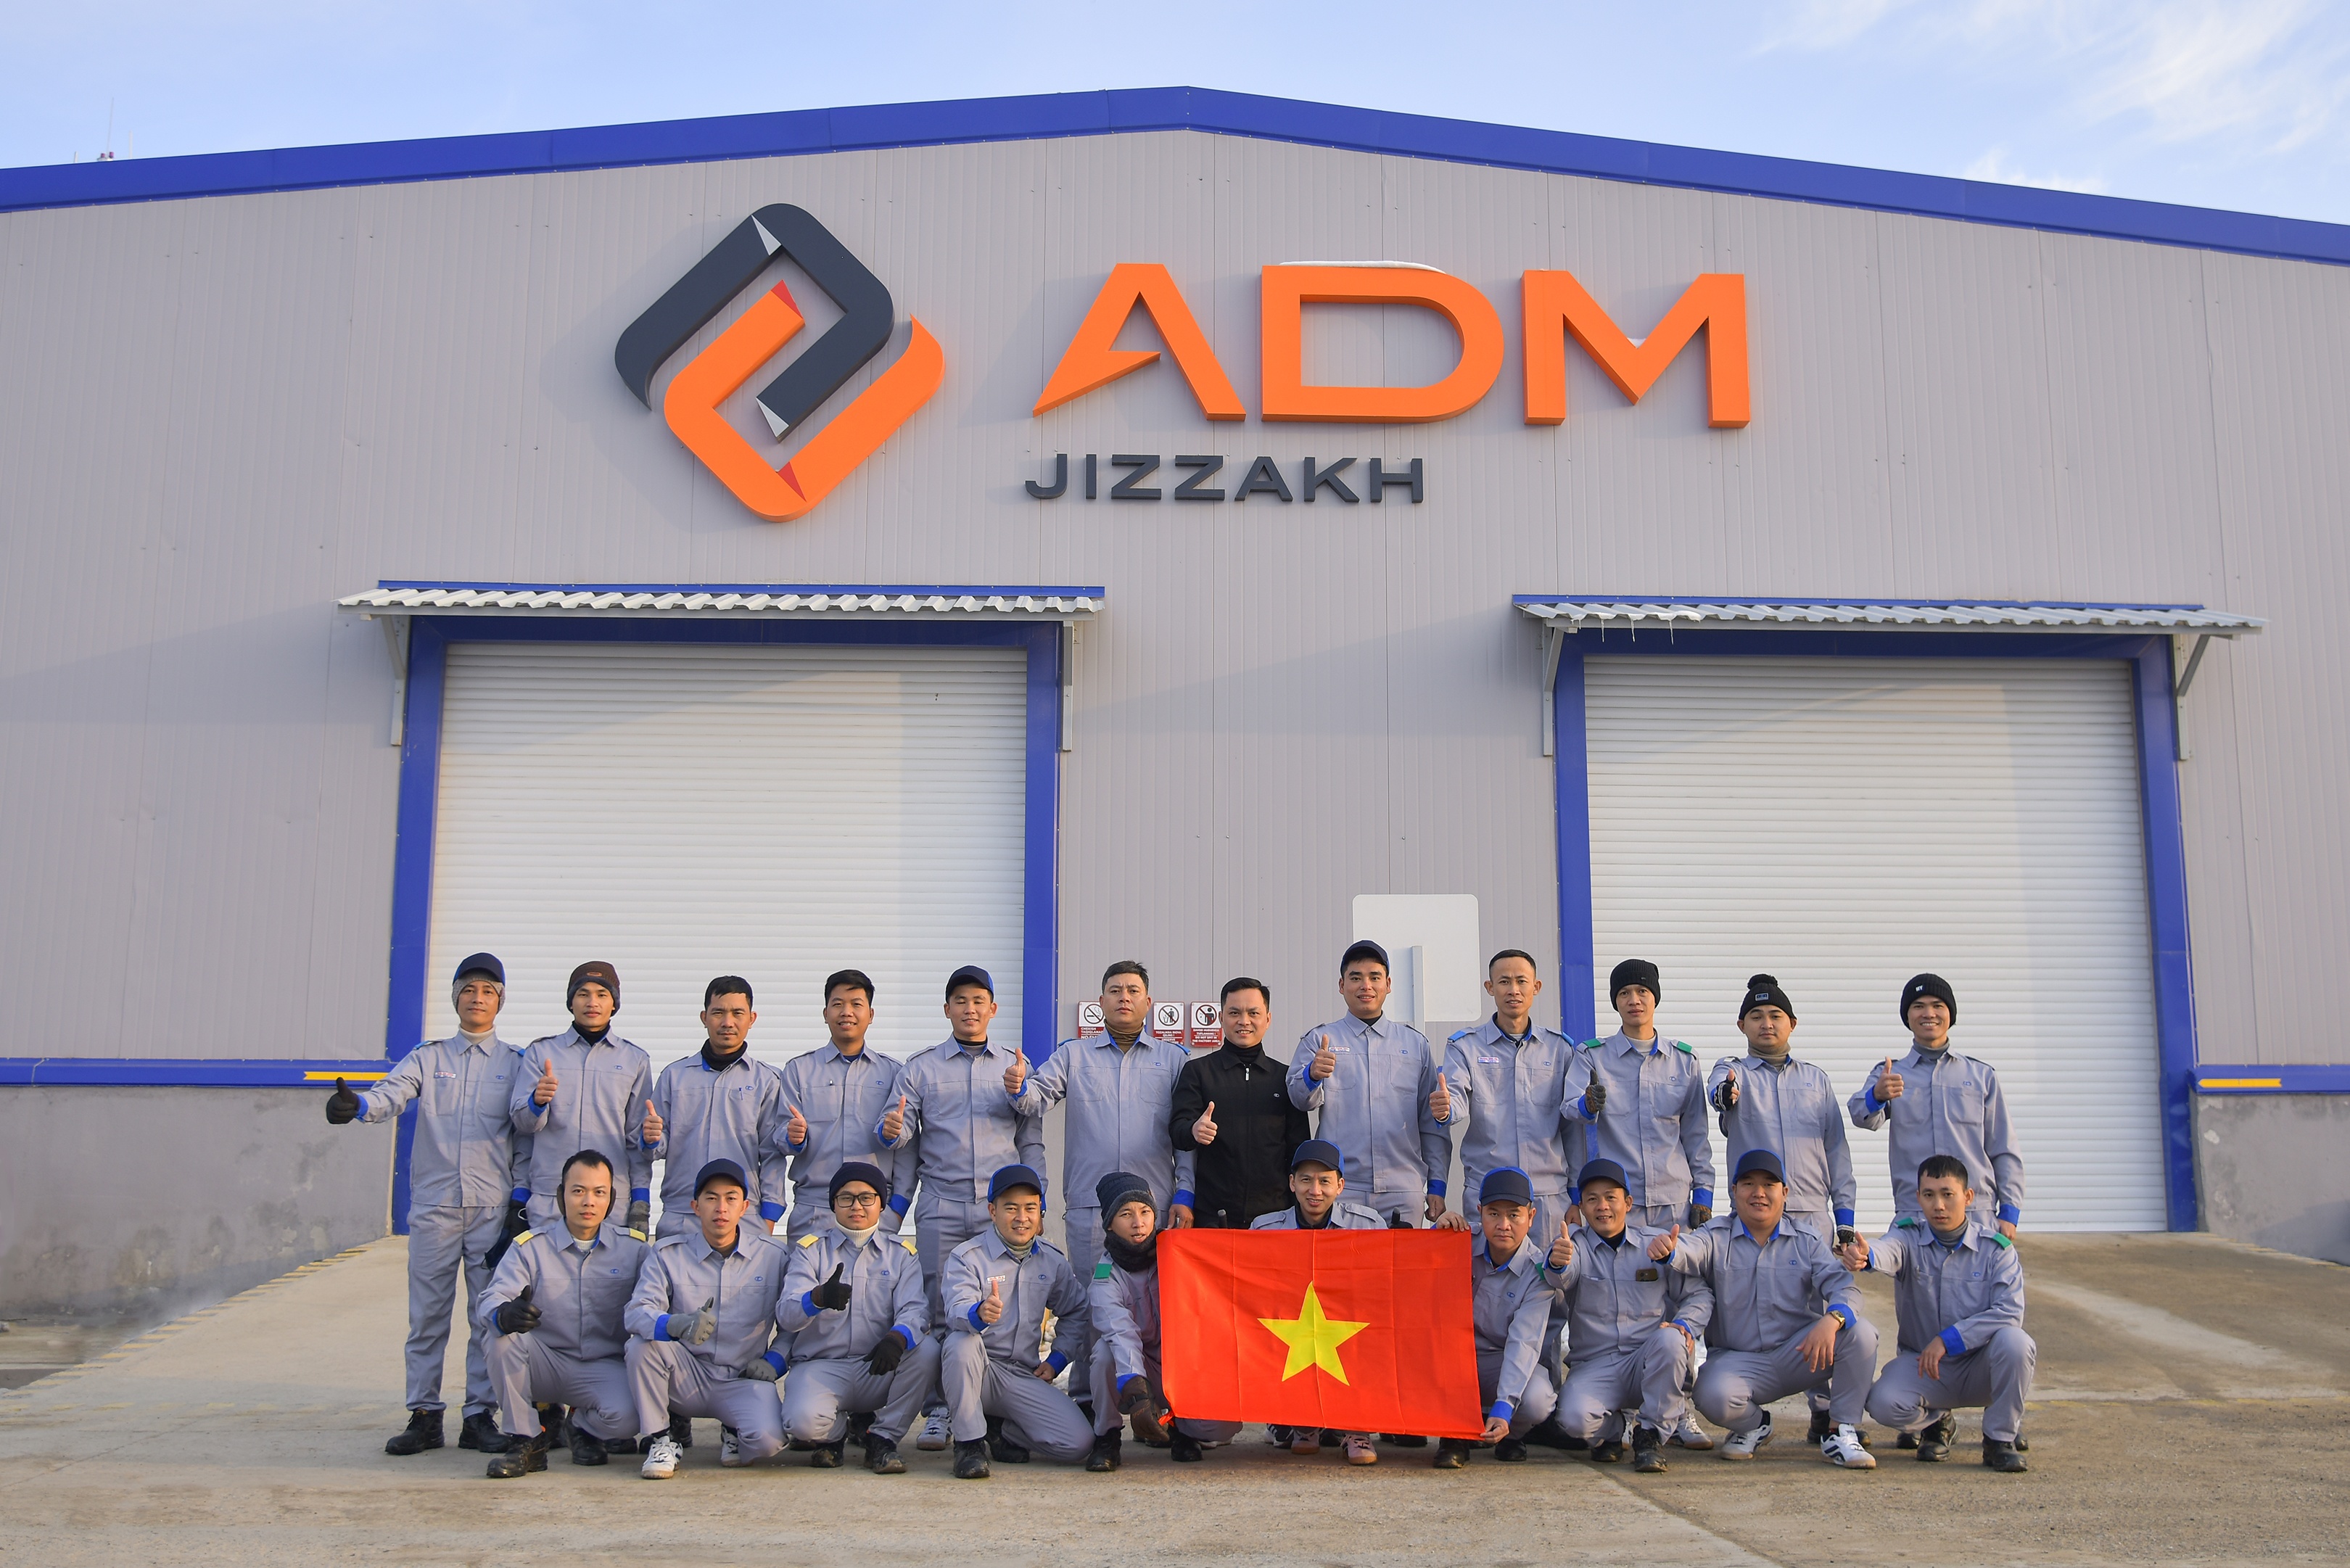 Nhà máy Thaco Kia tham gia giám sát sản xuất Kia Sonet tại Uzbekistan - ảnh 3